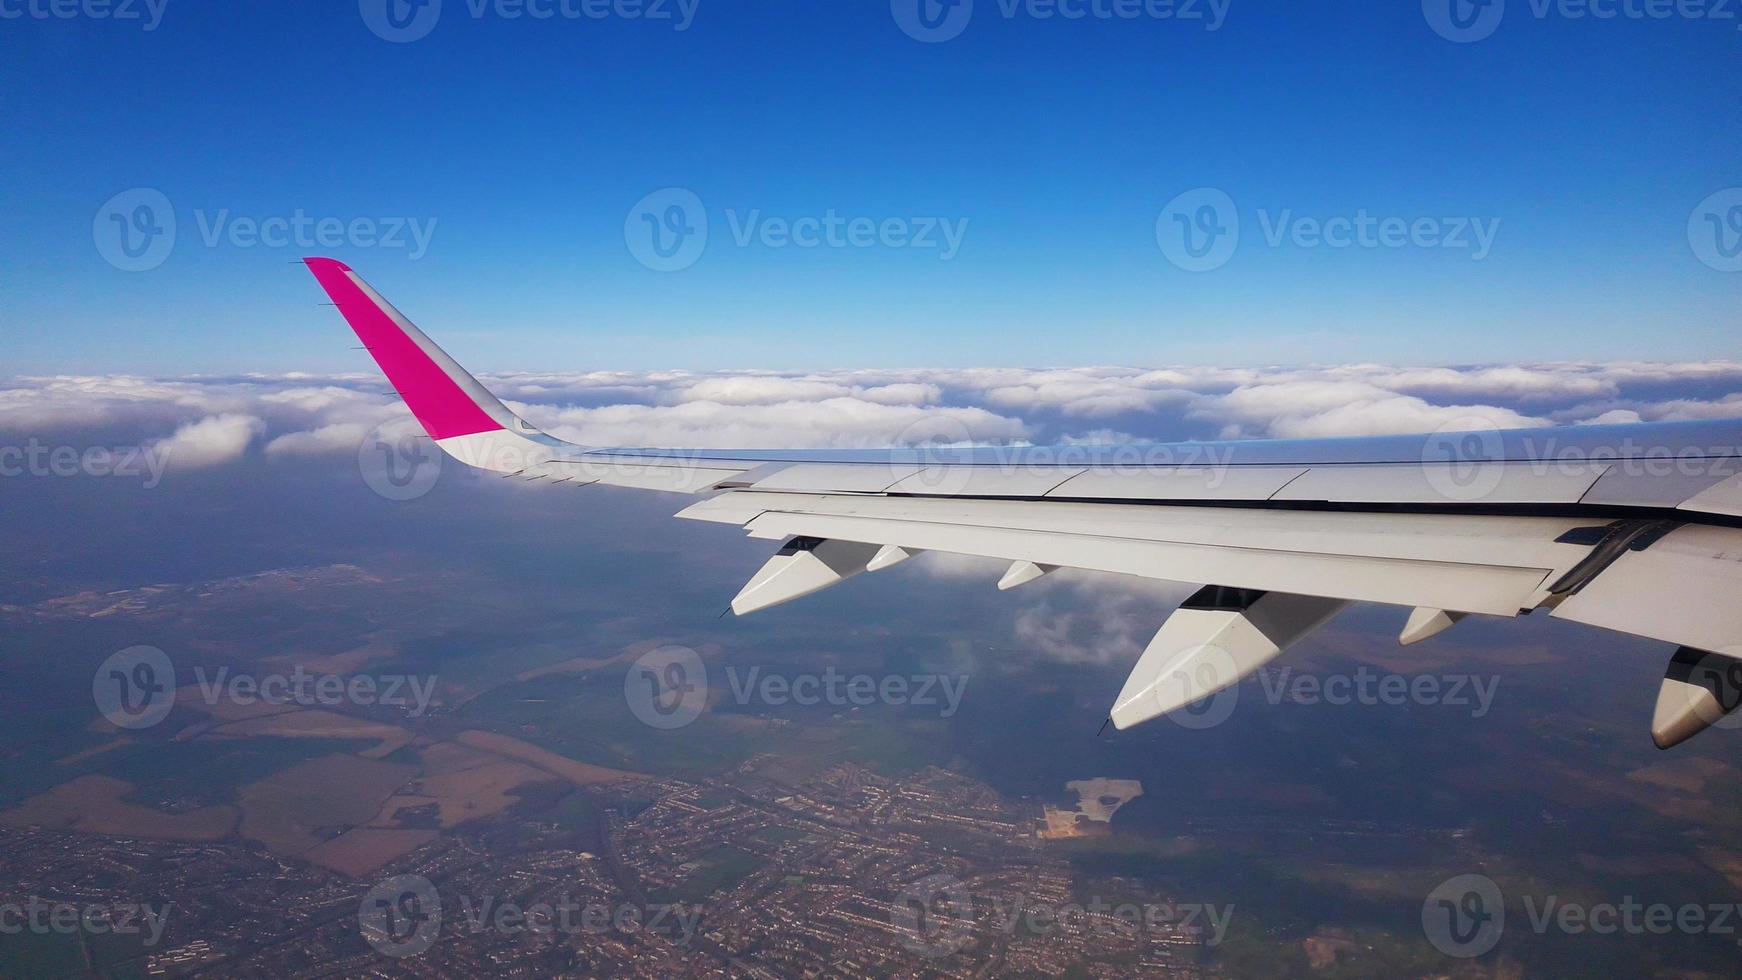 imagens aéreas da janela de um avião wizzair. 15. 09. 2019, Reino Unido. foto